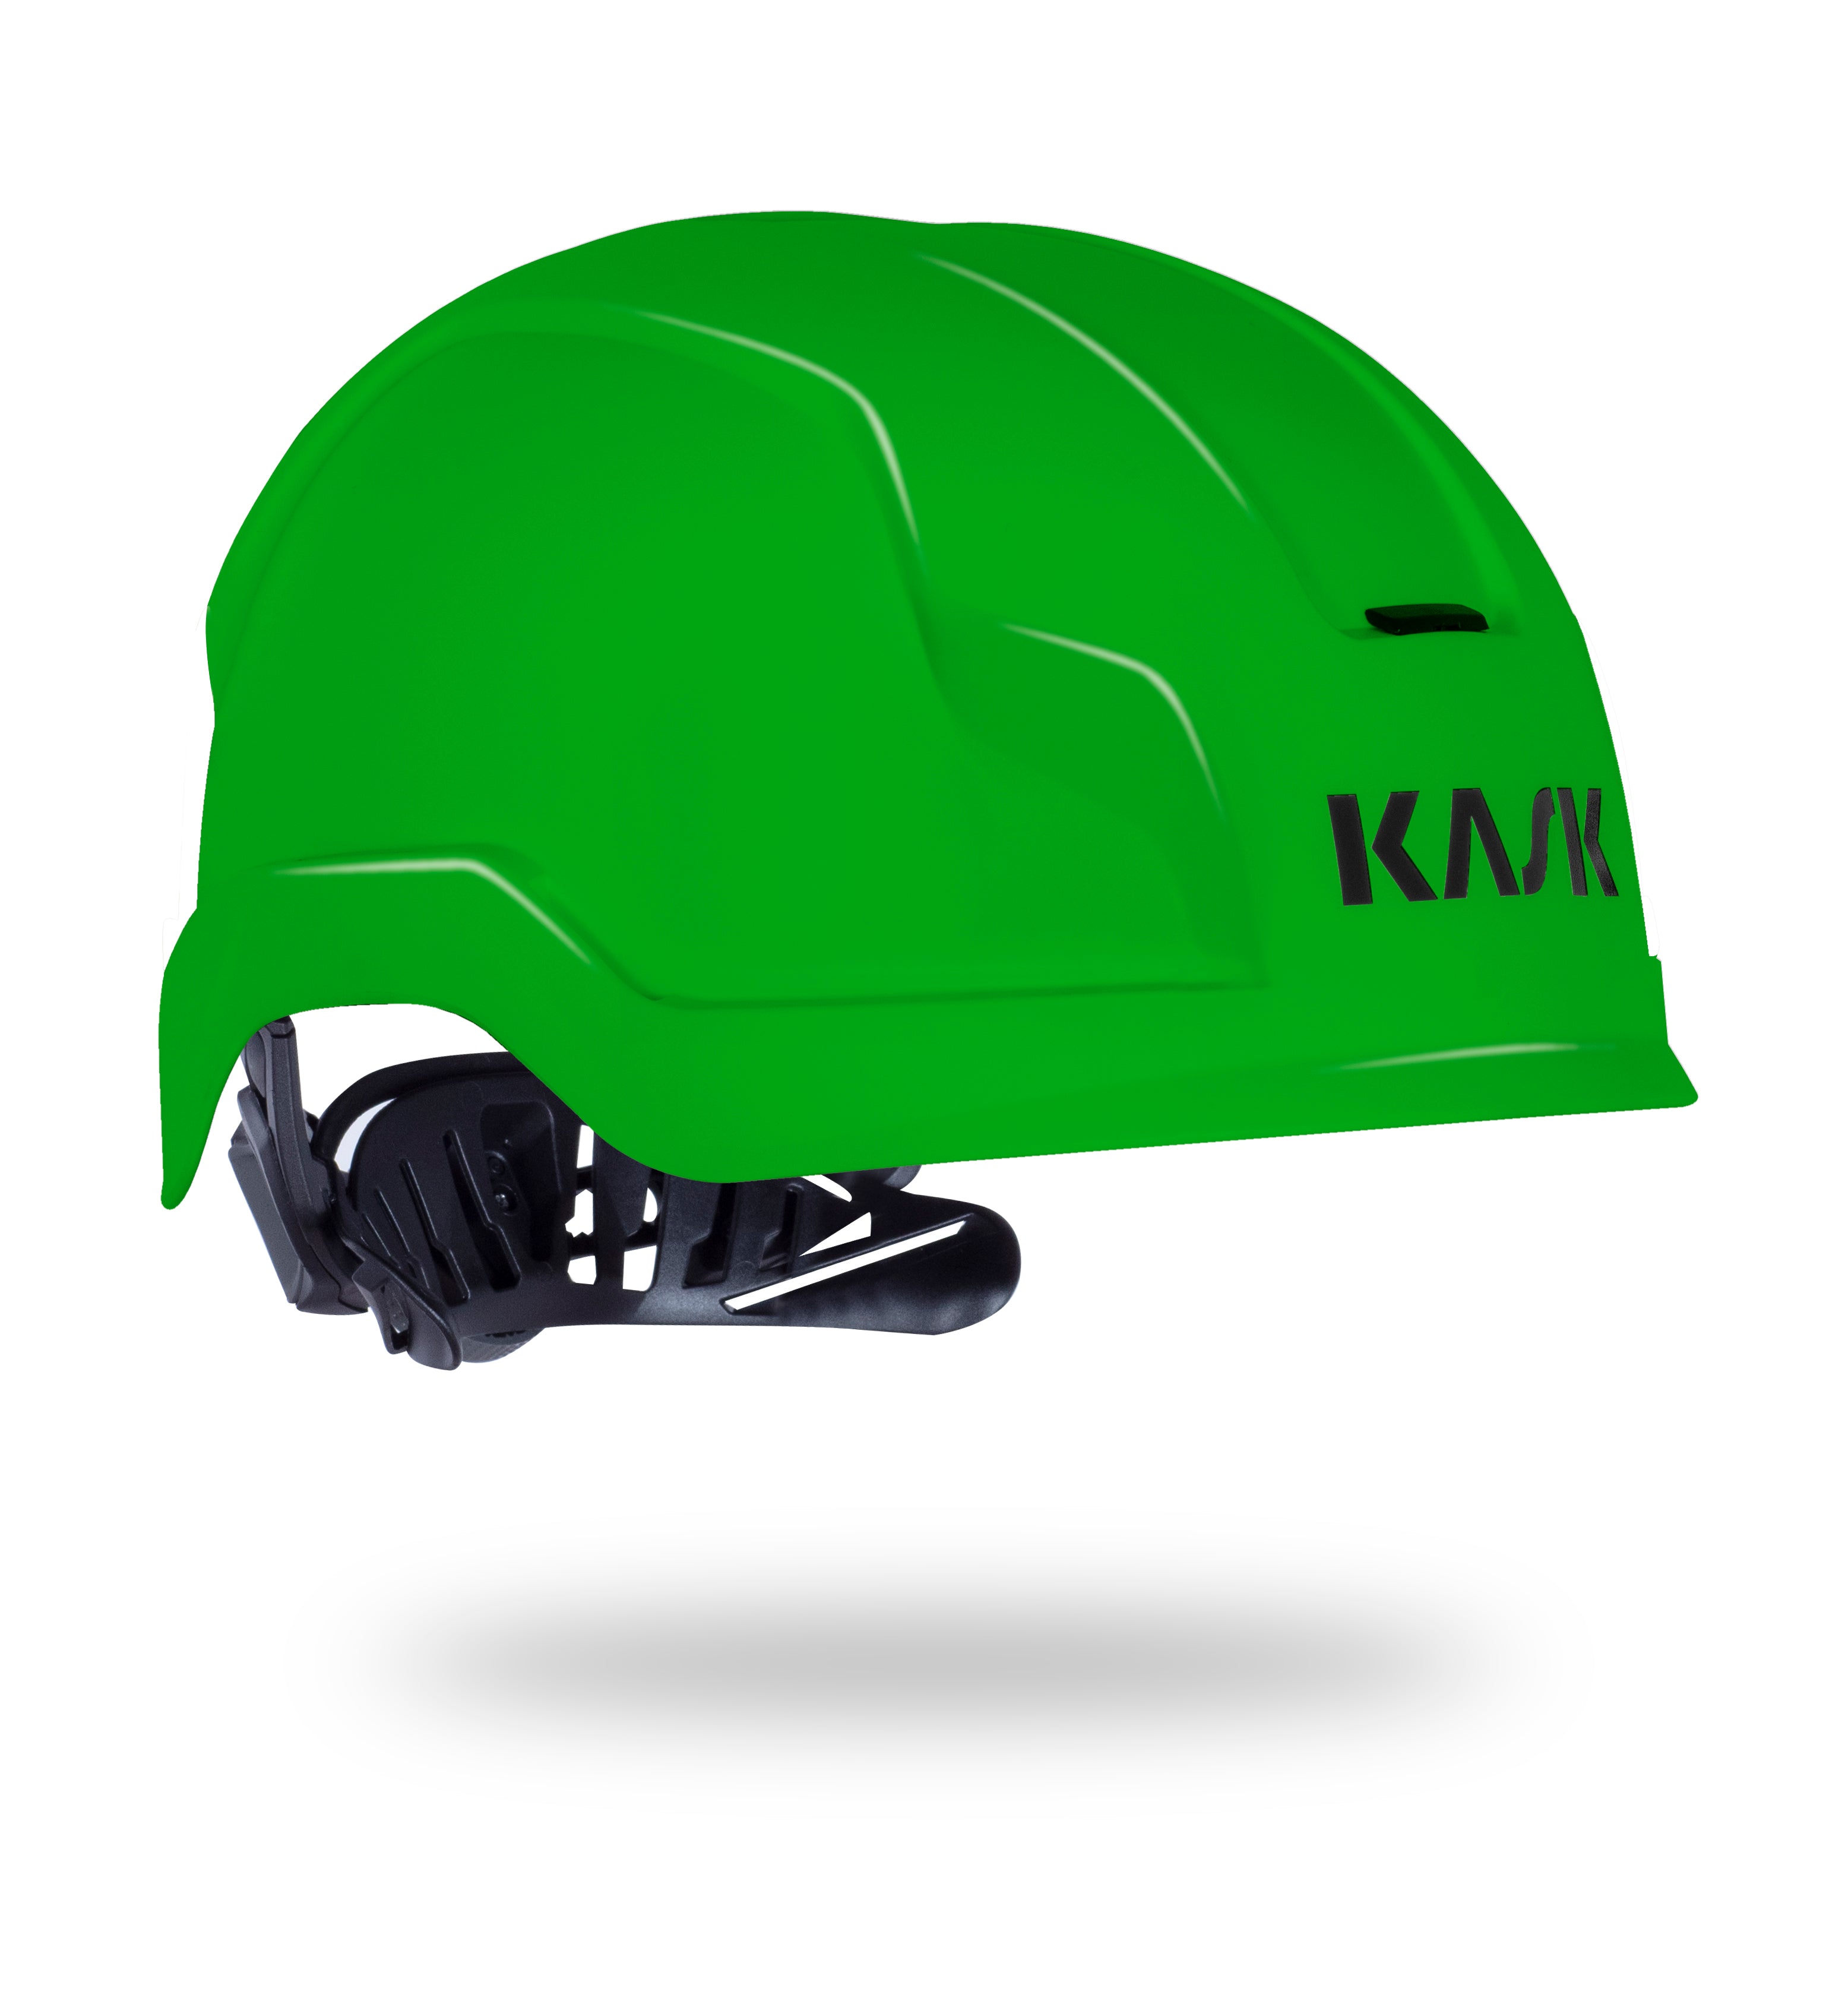 KASK Zenith X BA Helmet - EN397 EN50365